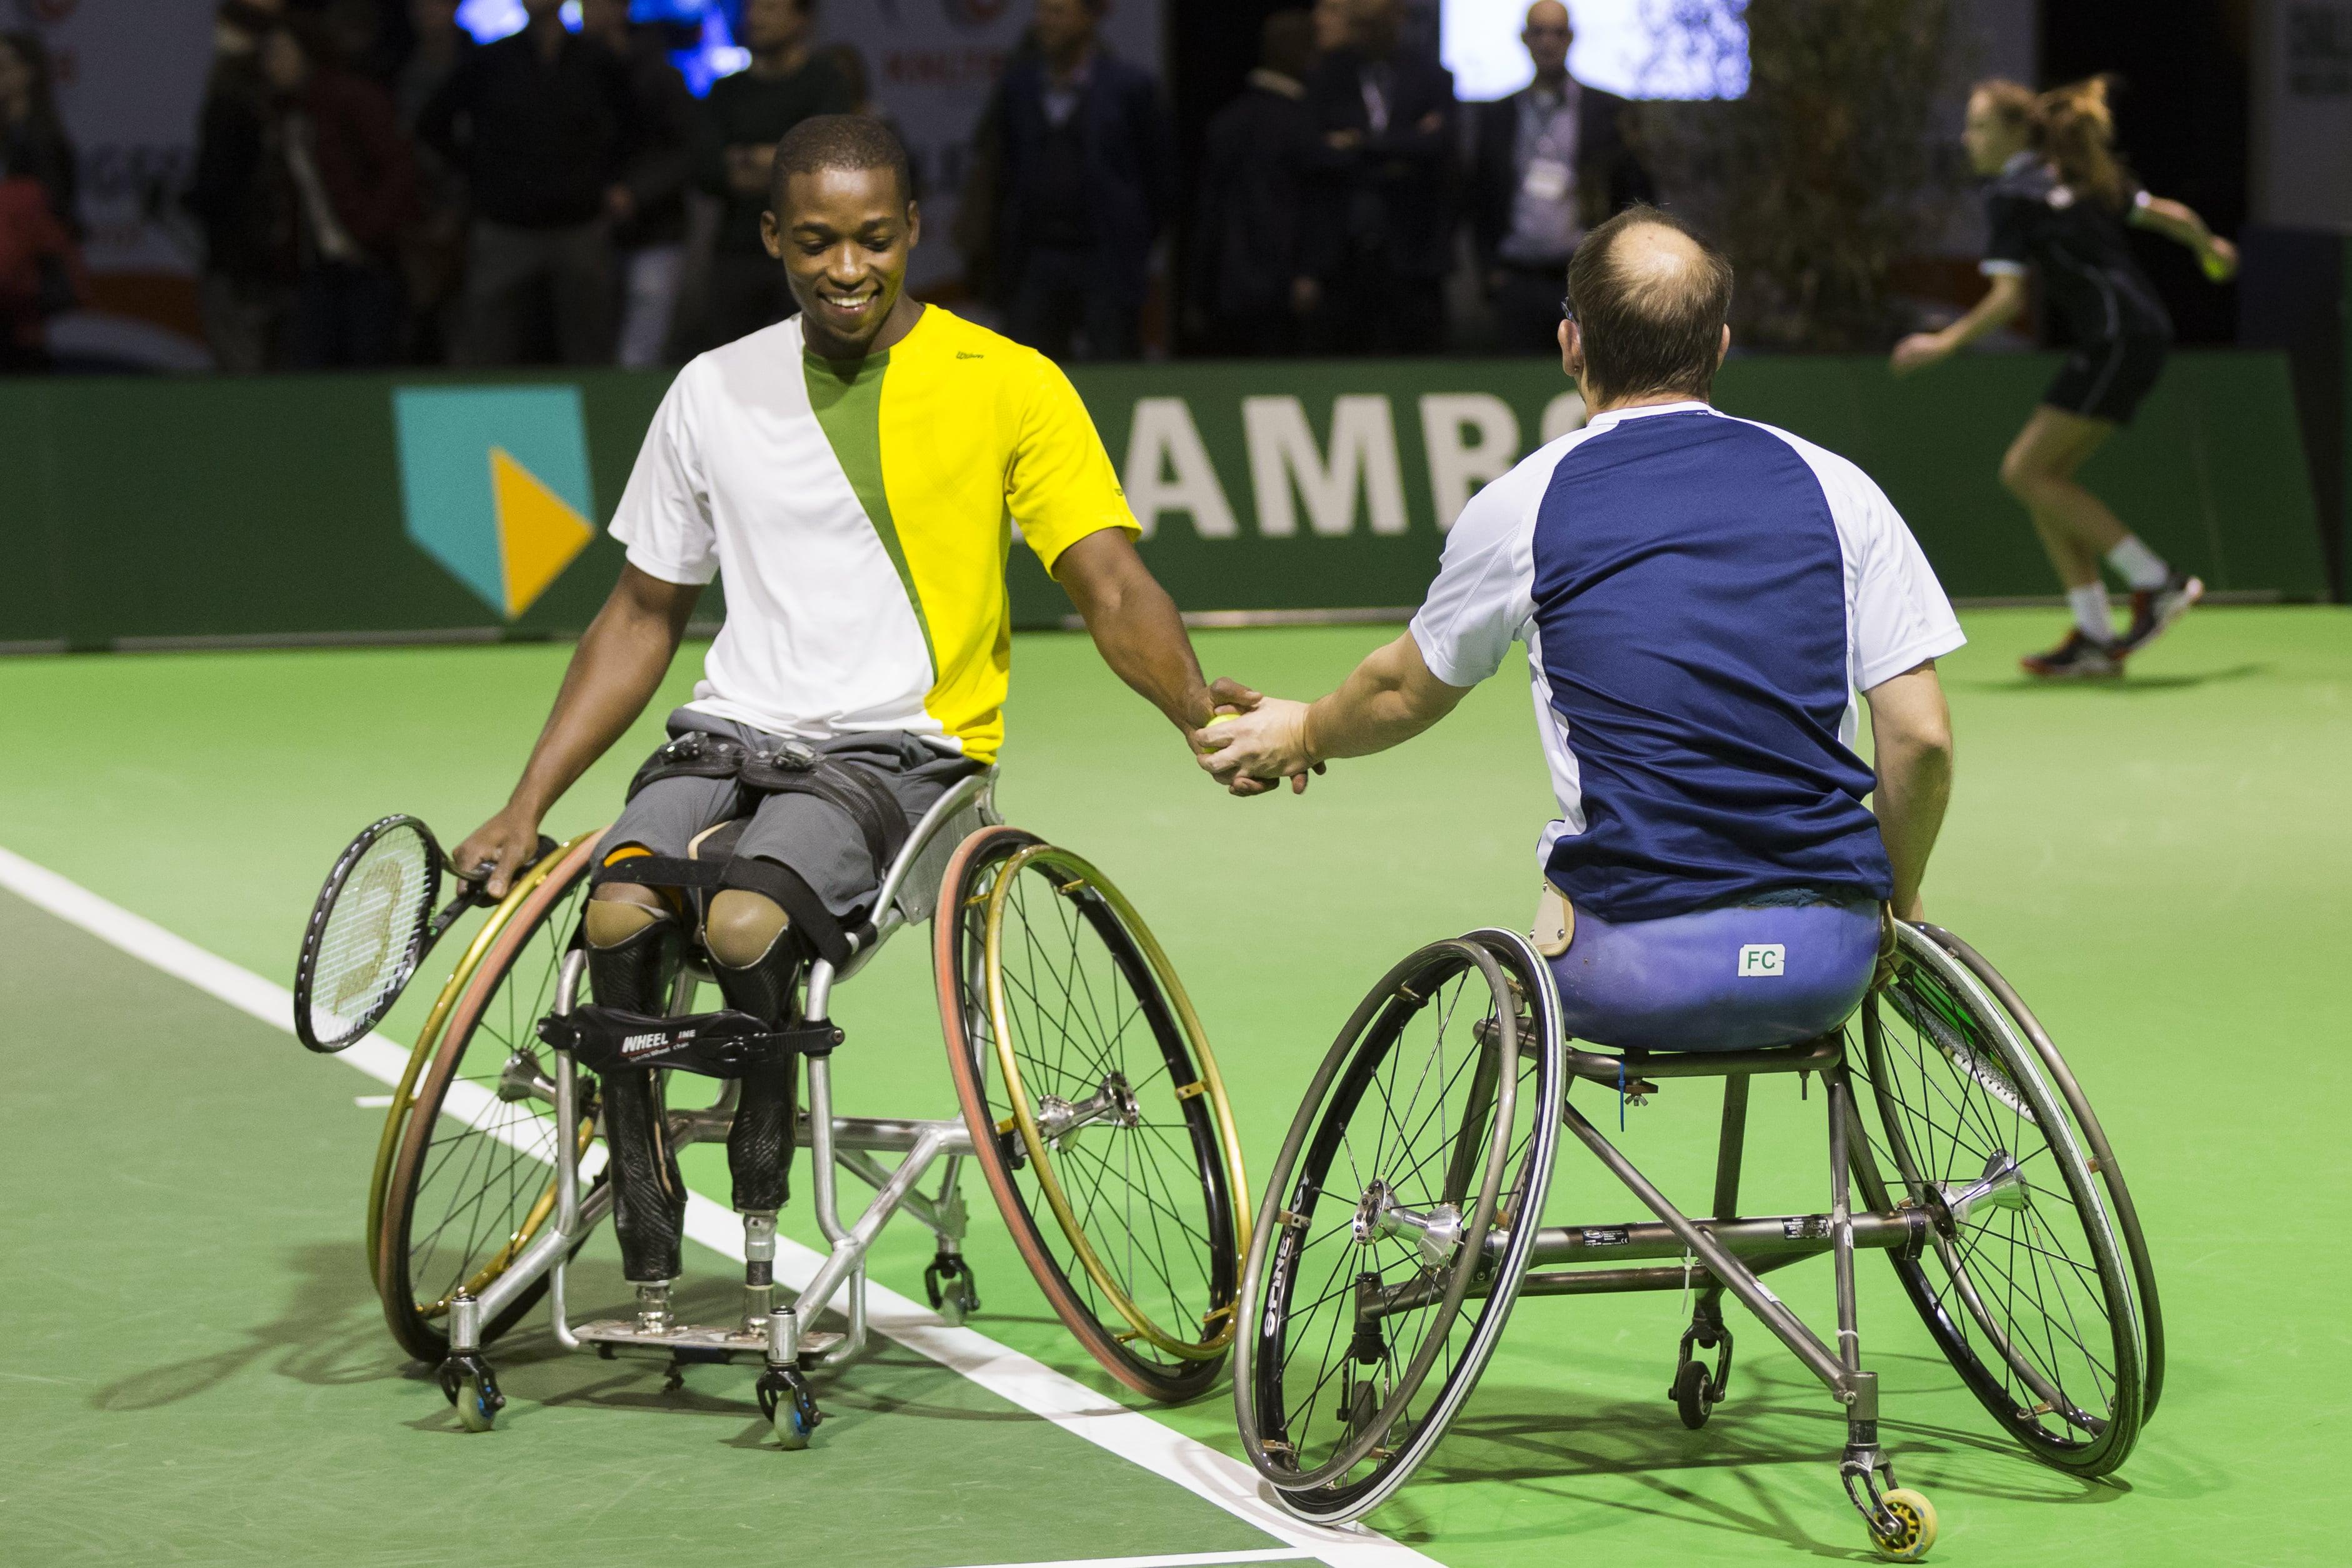 taart Rose kleur Onbelangrijk 51th ABN AMRO Open - About wheelchair tennis tournament